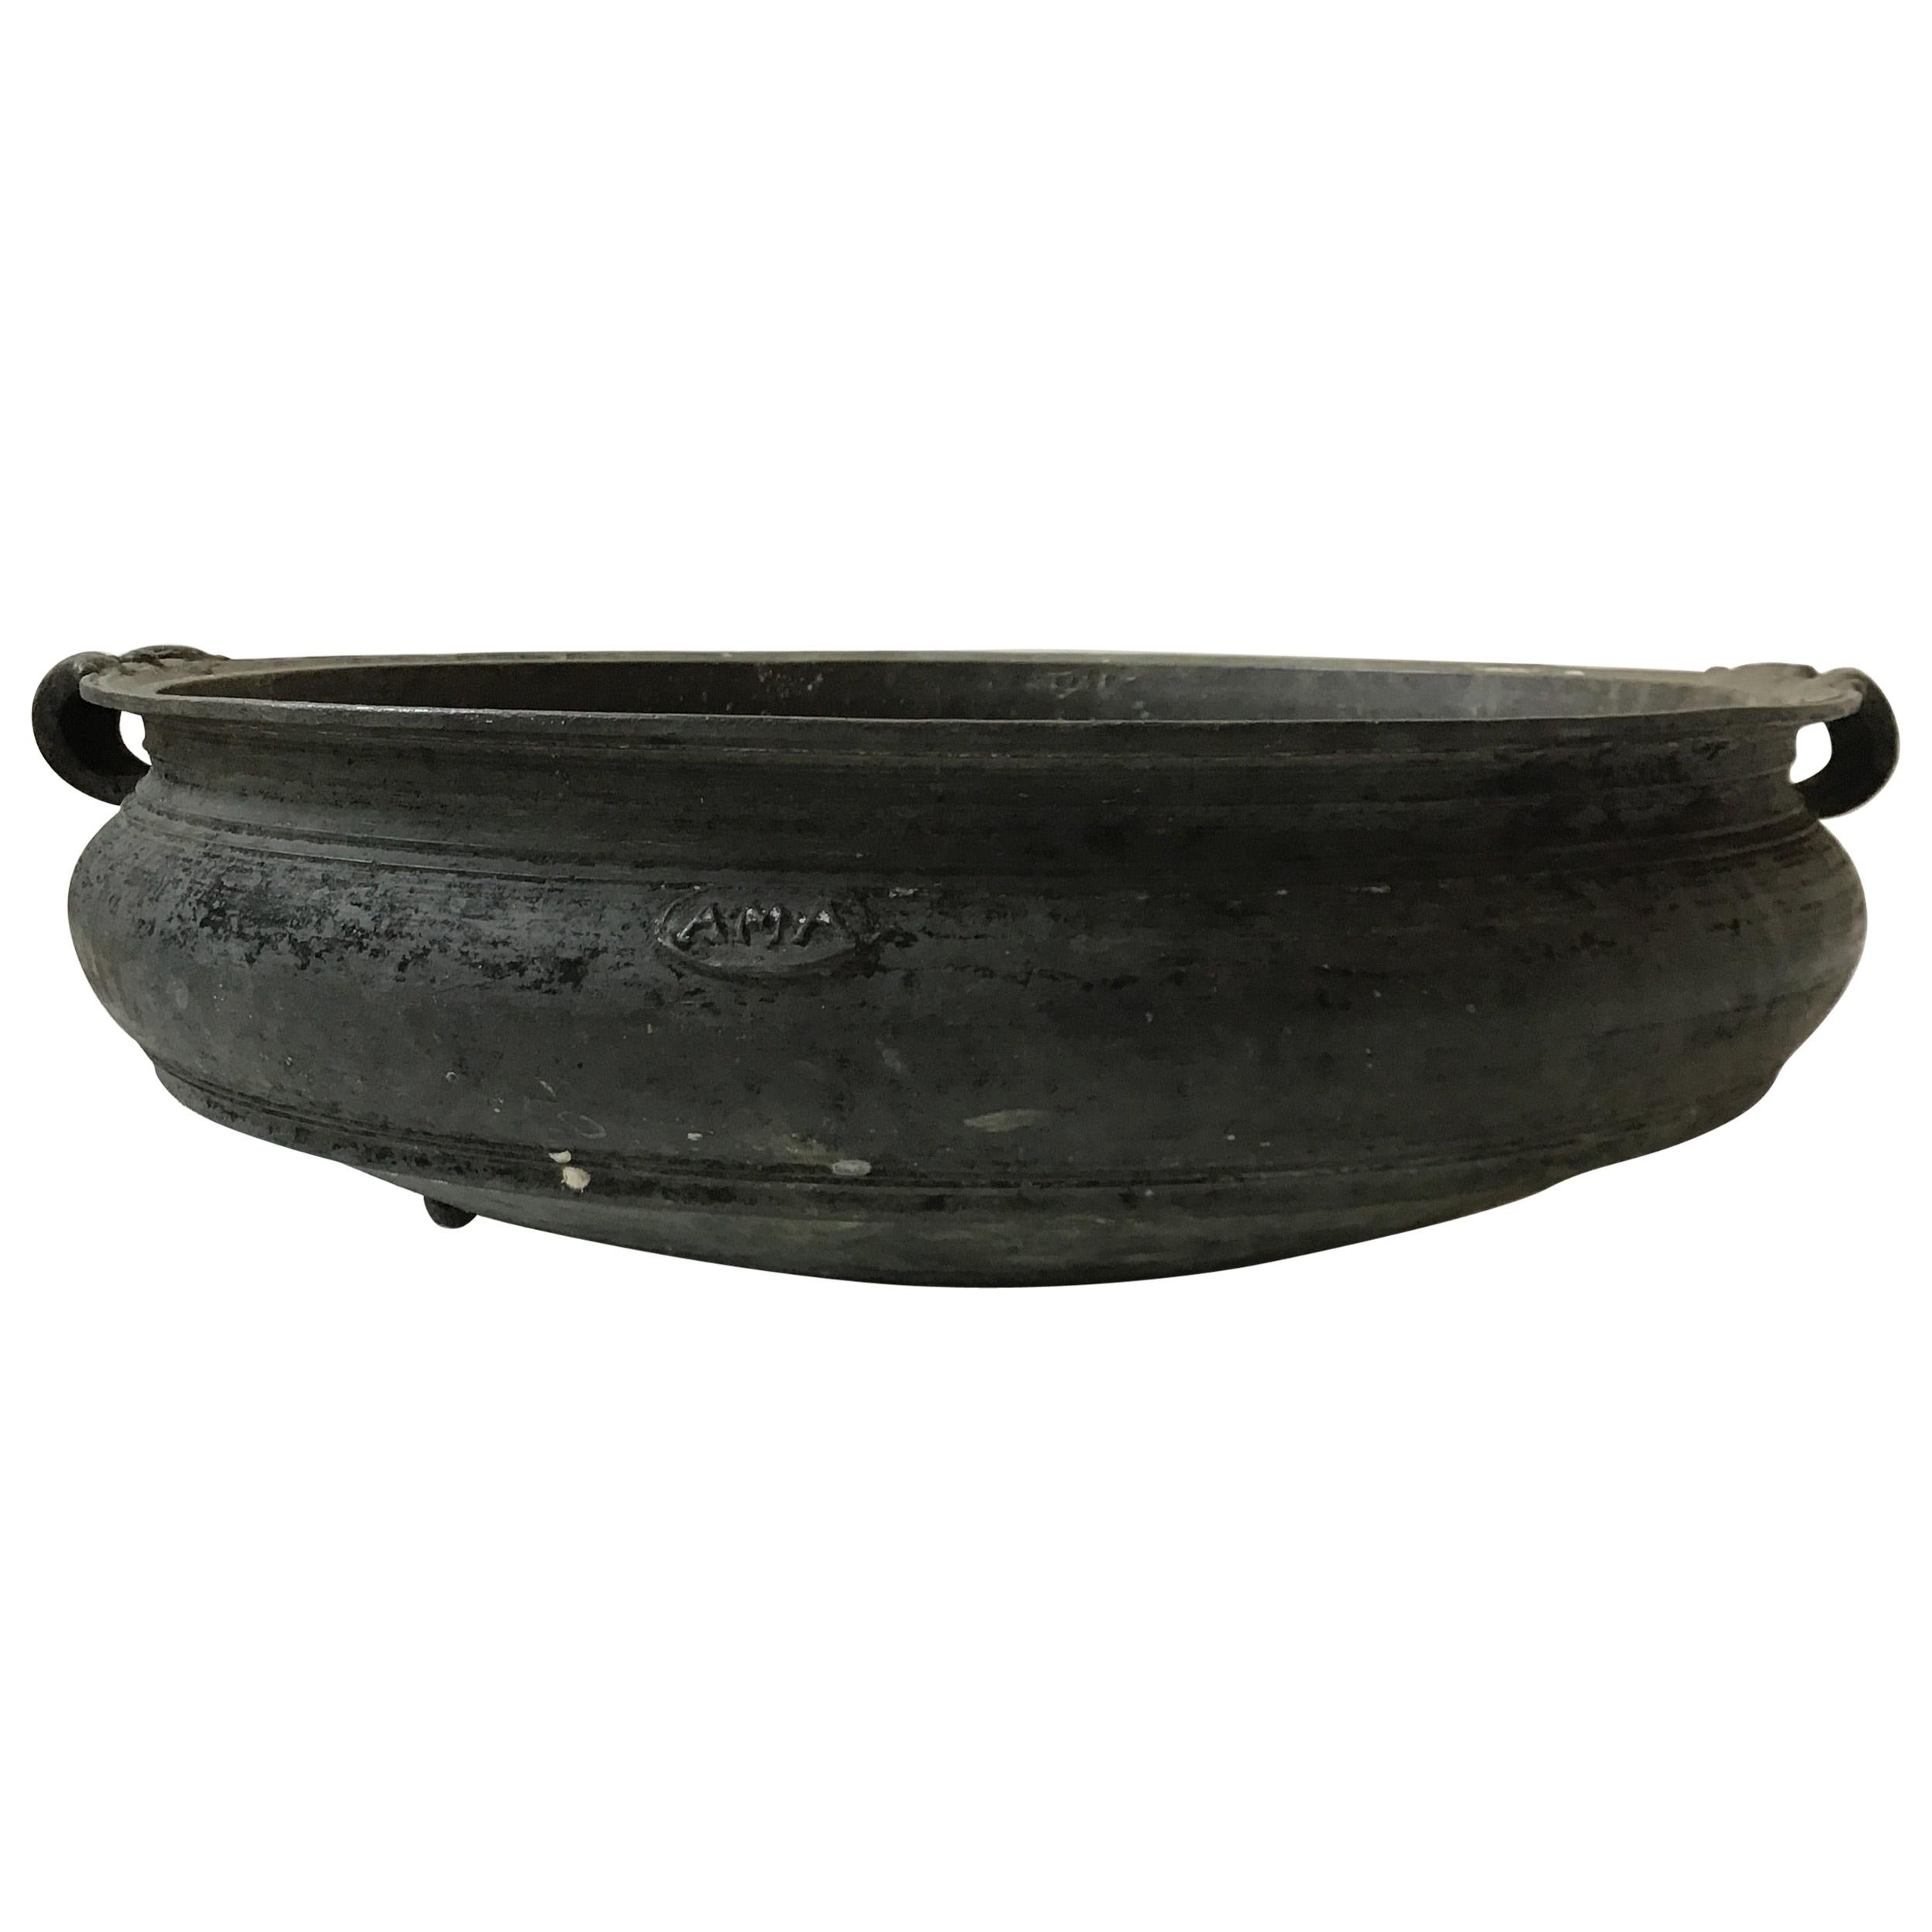 Large Asian Indian Cast Bronze Urli Temple Bowl / Planter